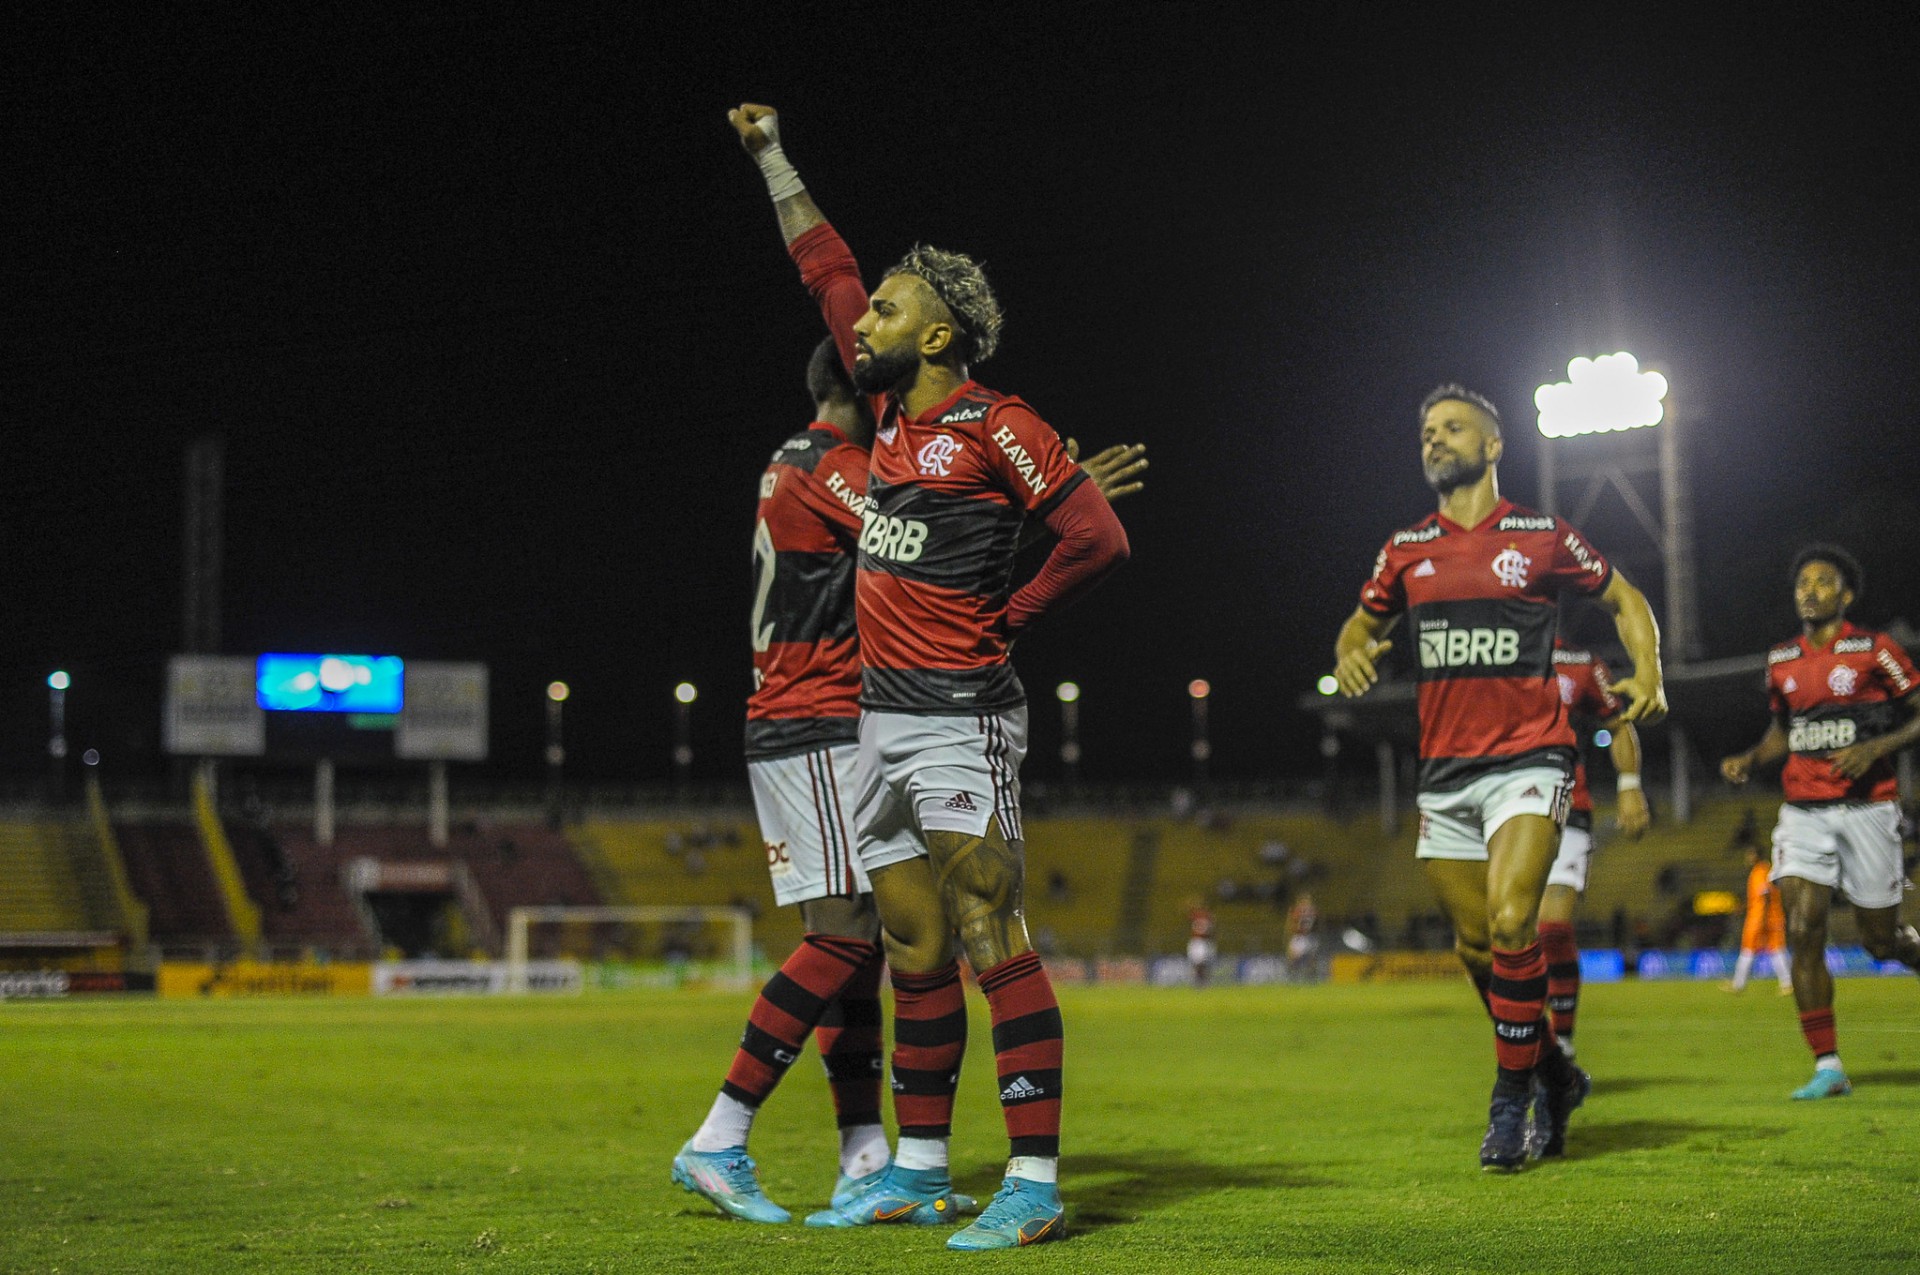 Gabigol comemora seu gol contra o Nova Iguaçu, fazendo o gesto contra o racismo - Marcelo Cortes/C.R. Flamengo